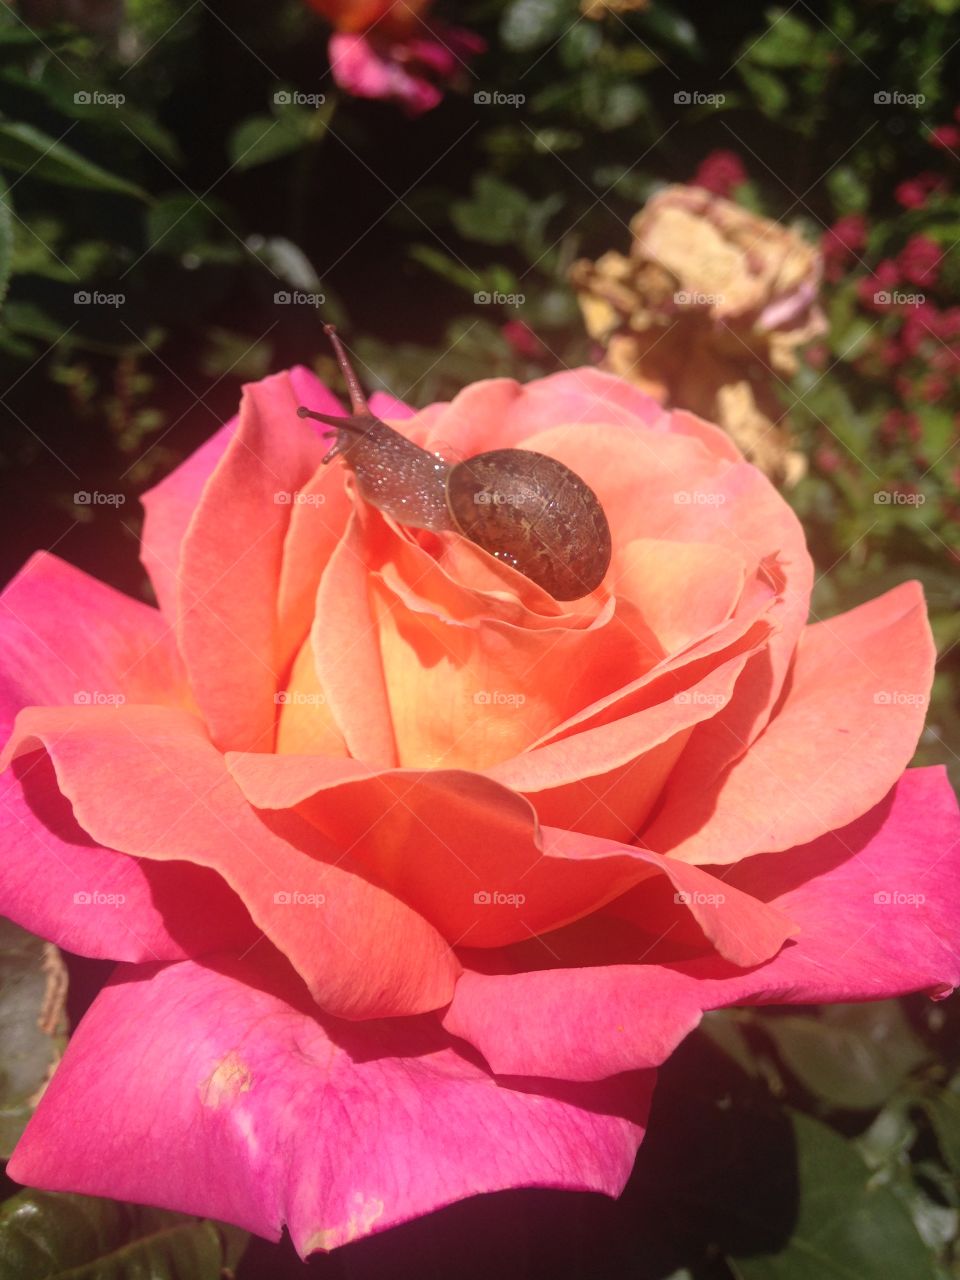 Snail on rose 